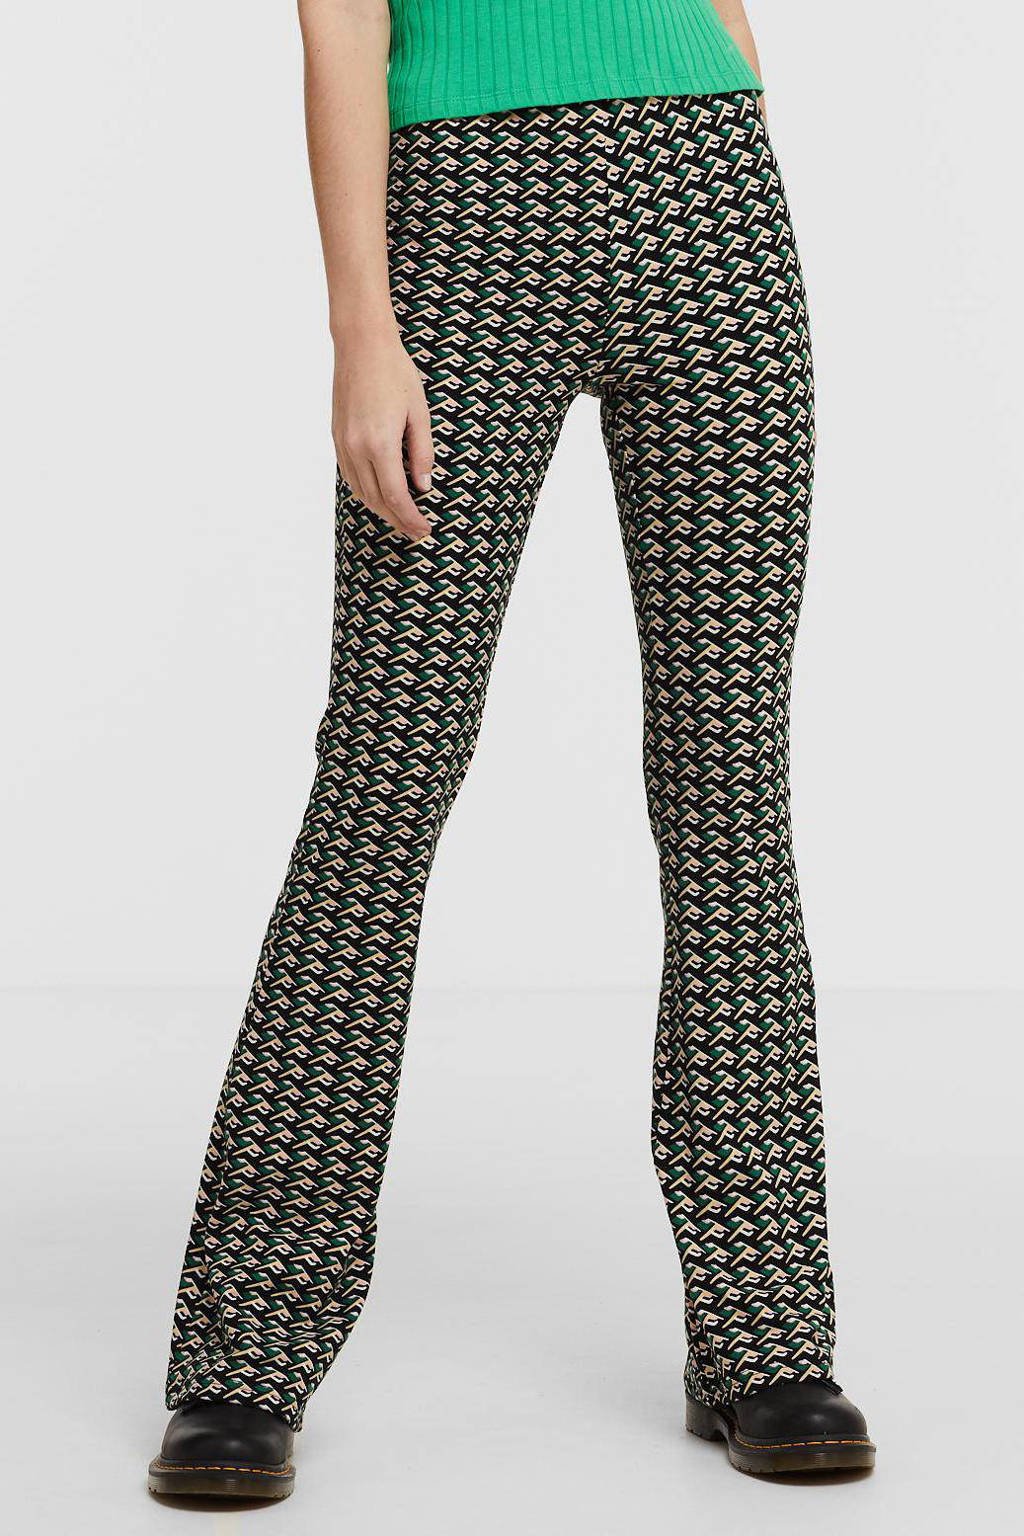 Zwart, groen en beige dames Colourful Rebel flared broek print van polyester met high waist, elastische tailleband en grafische print